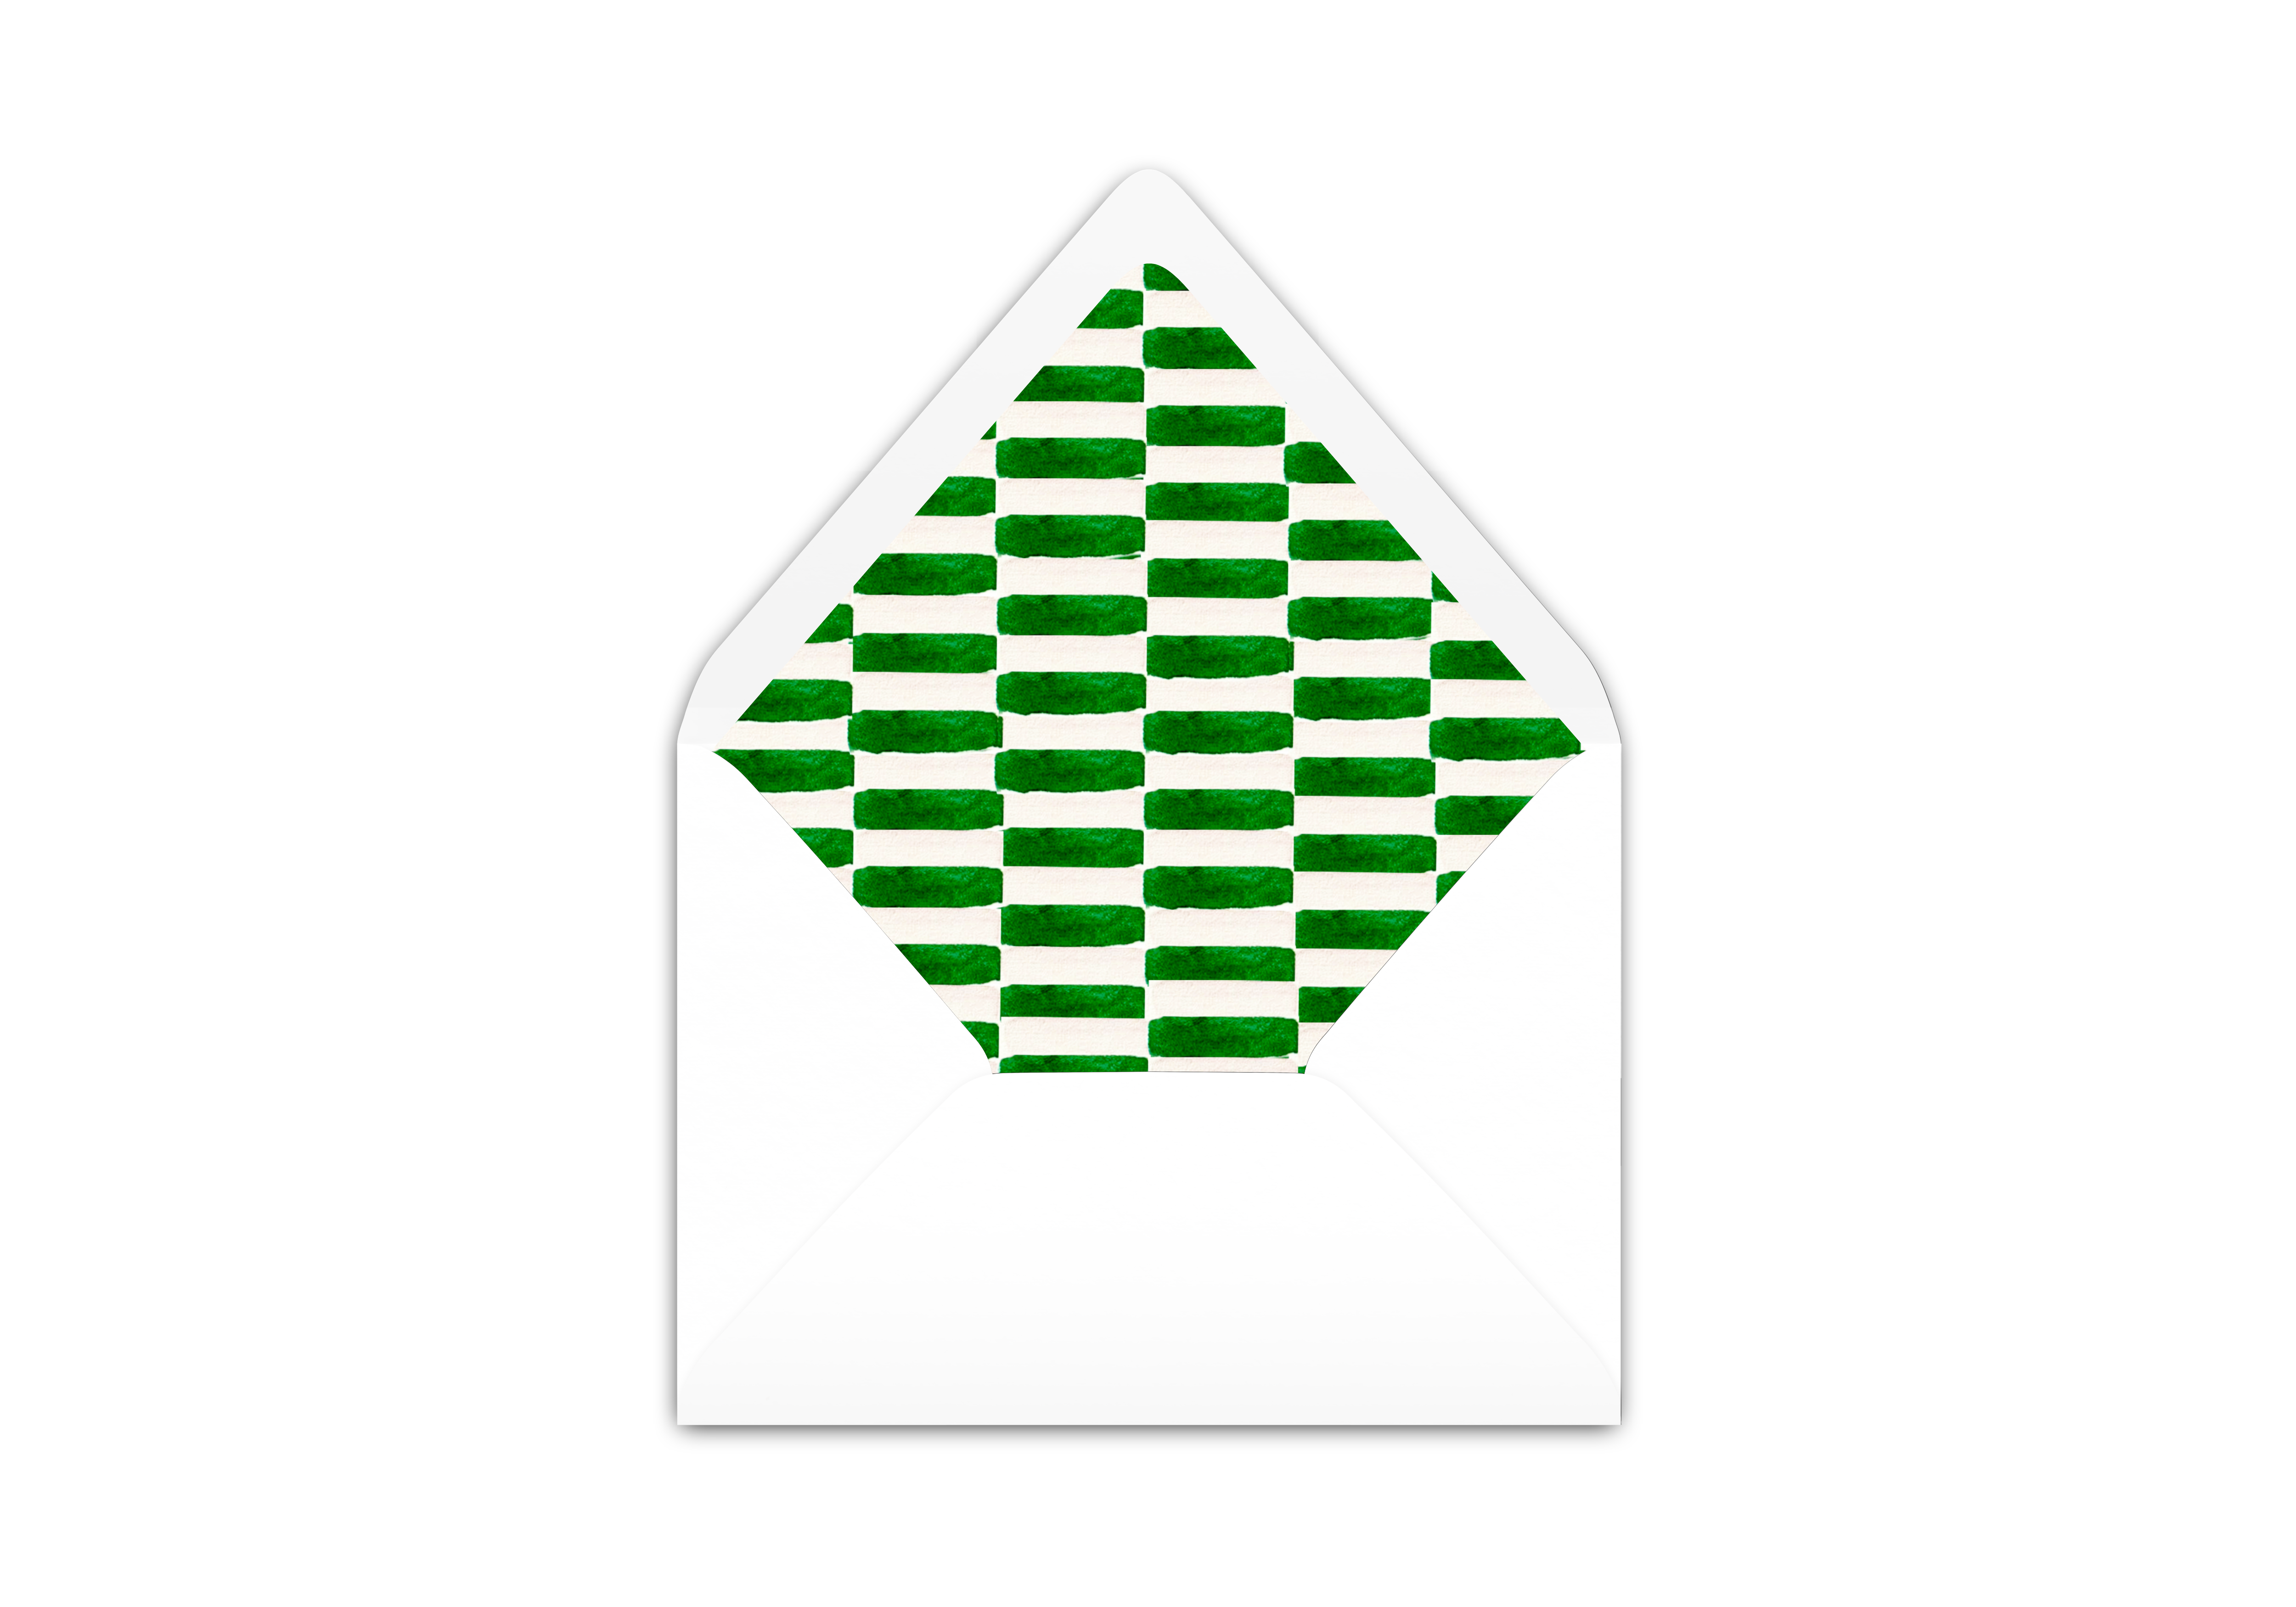 Envelope Liner